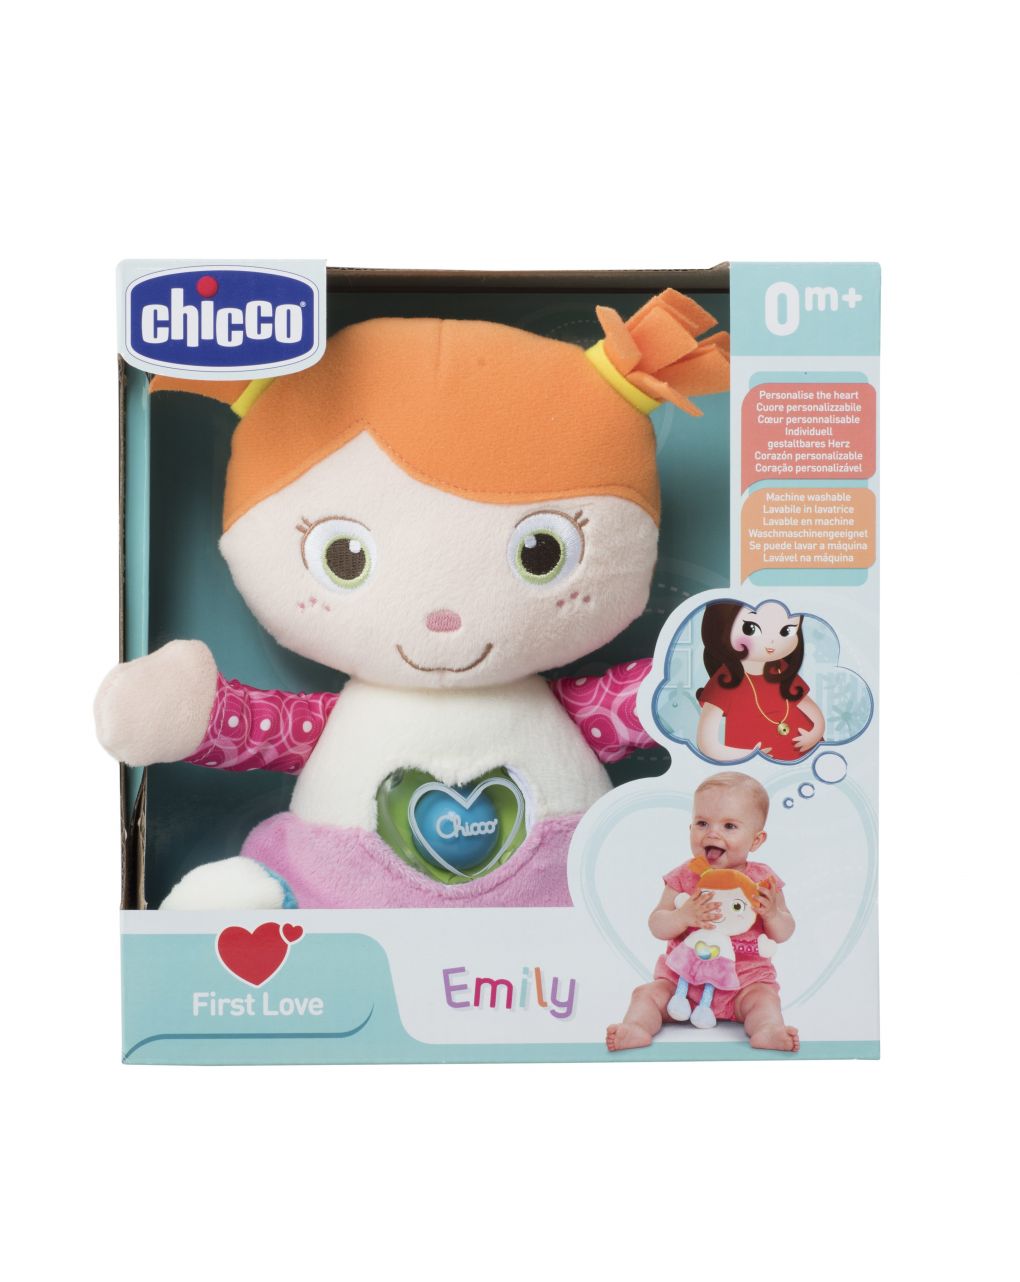 Emily primera muñeca - chicco - Chicco